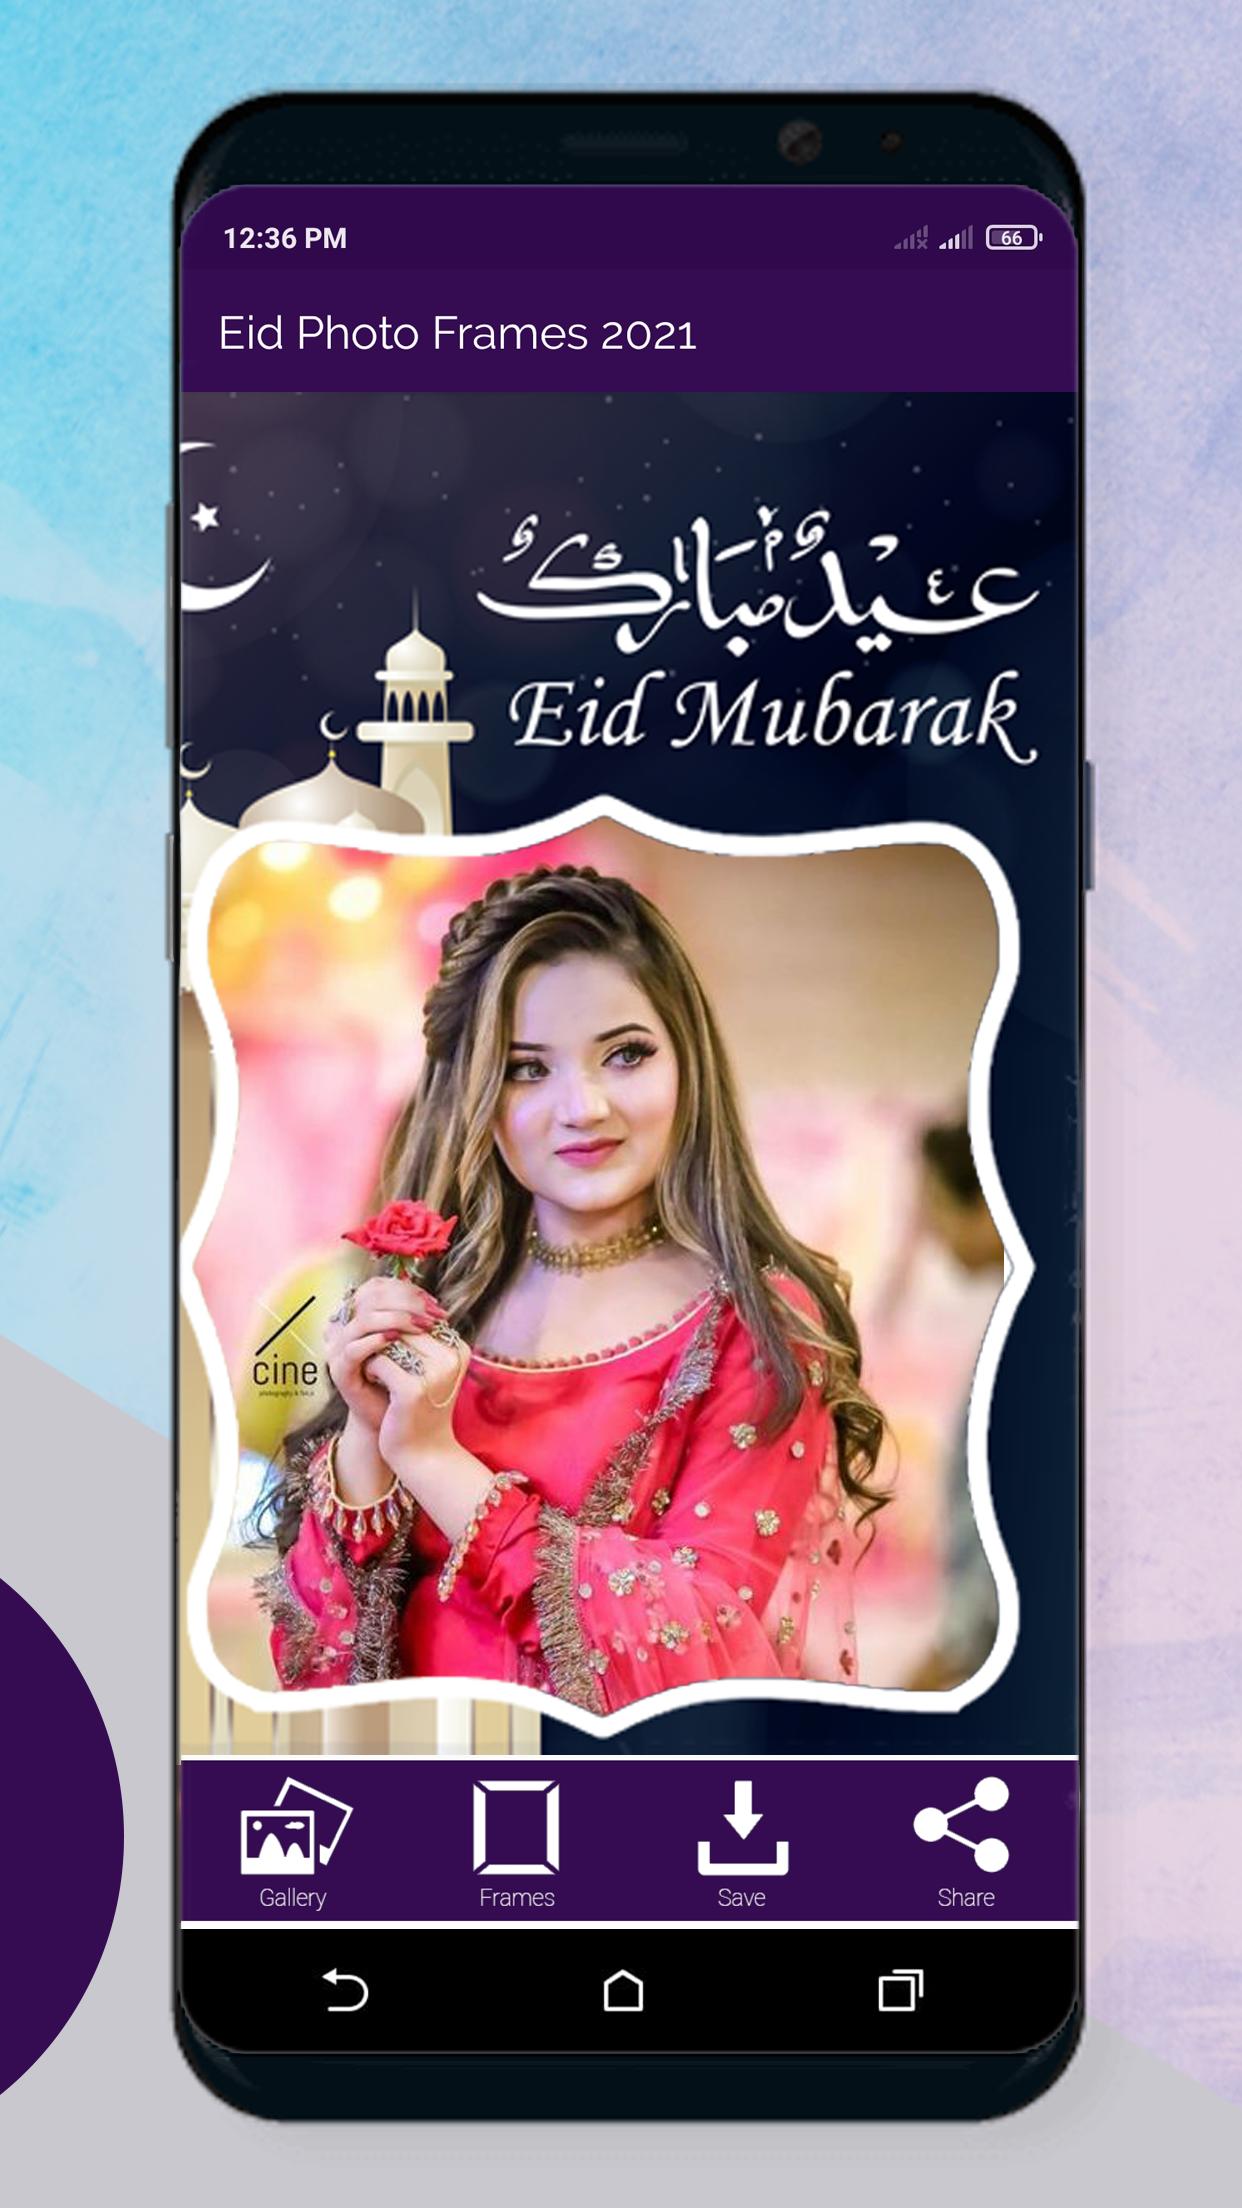 Eid Mubarak Photo Frames 2021 3.0 Screenshot 4